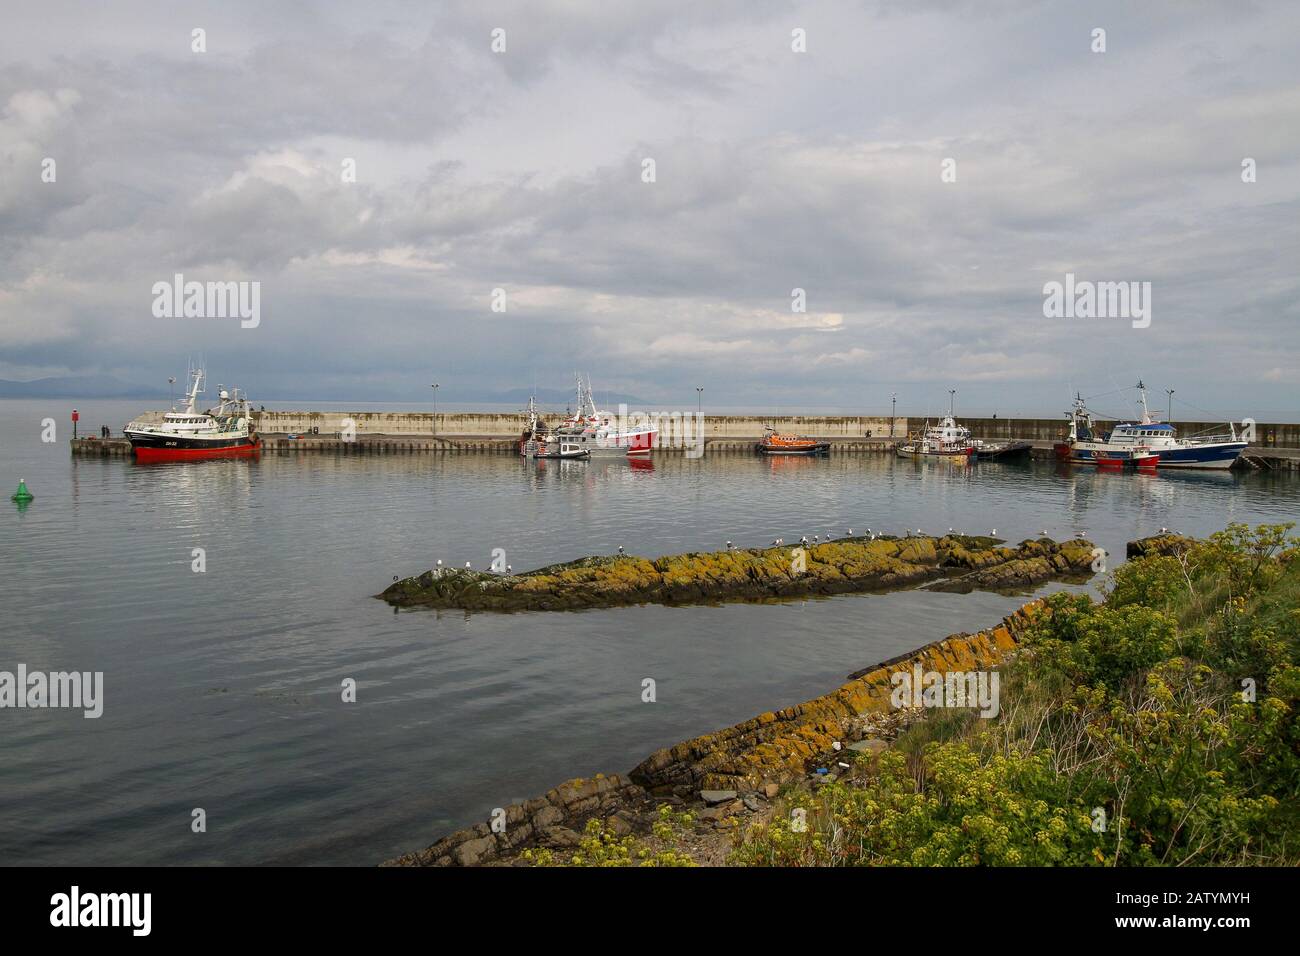 Panorama auf einen irischen Fischerhafen mit Fischerbooten, die an der modernen Betonpier in Port Oriel an der irischen Ostküste in Co Louth angelehnt sind. Stockfoto